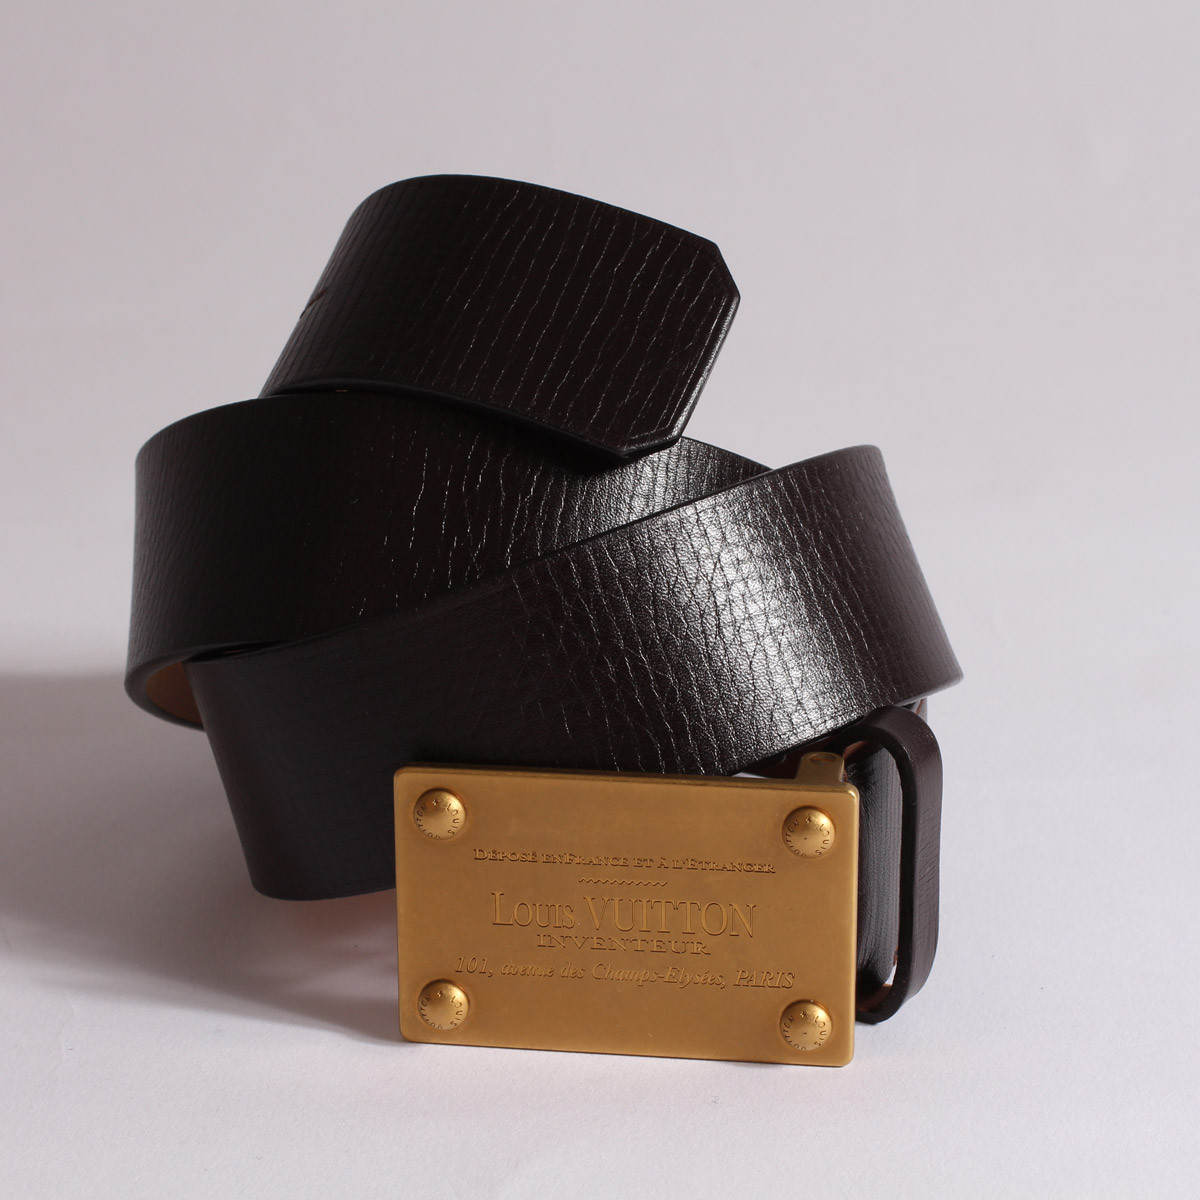 Réplica de cinturón con hebilla cuadrada de Louis Vuitton a la venta con  precio barato en la tienda de bolsos falsos